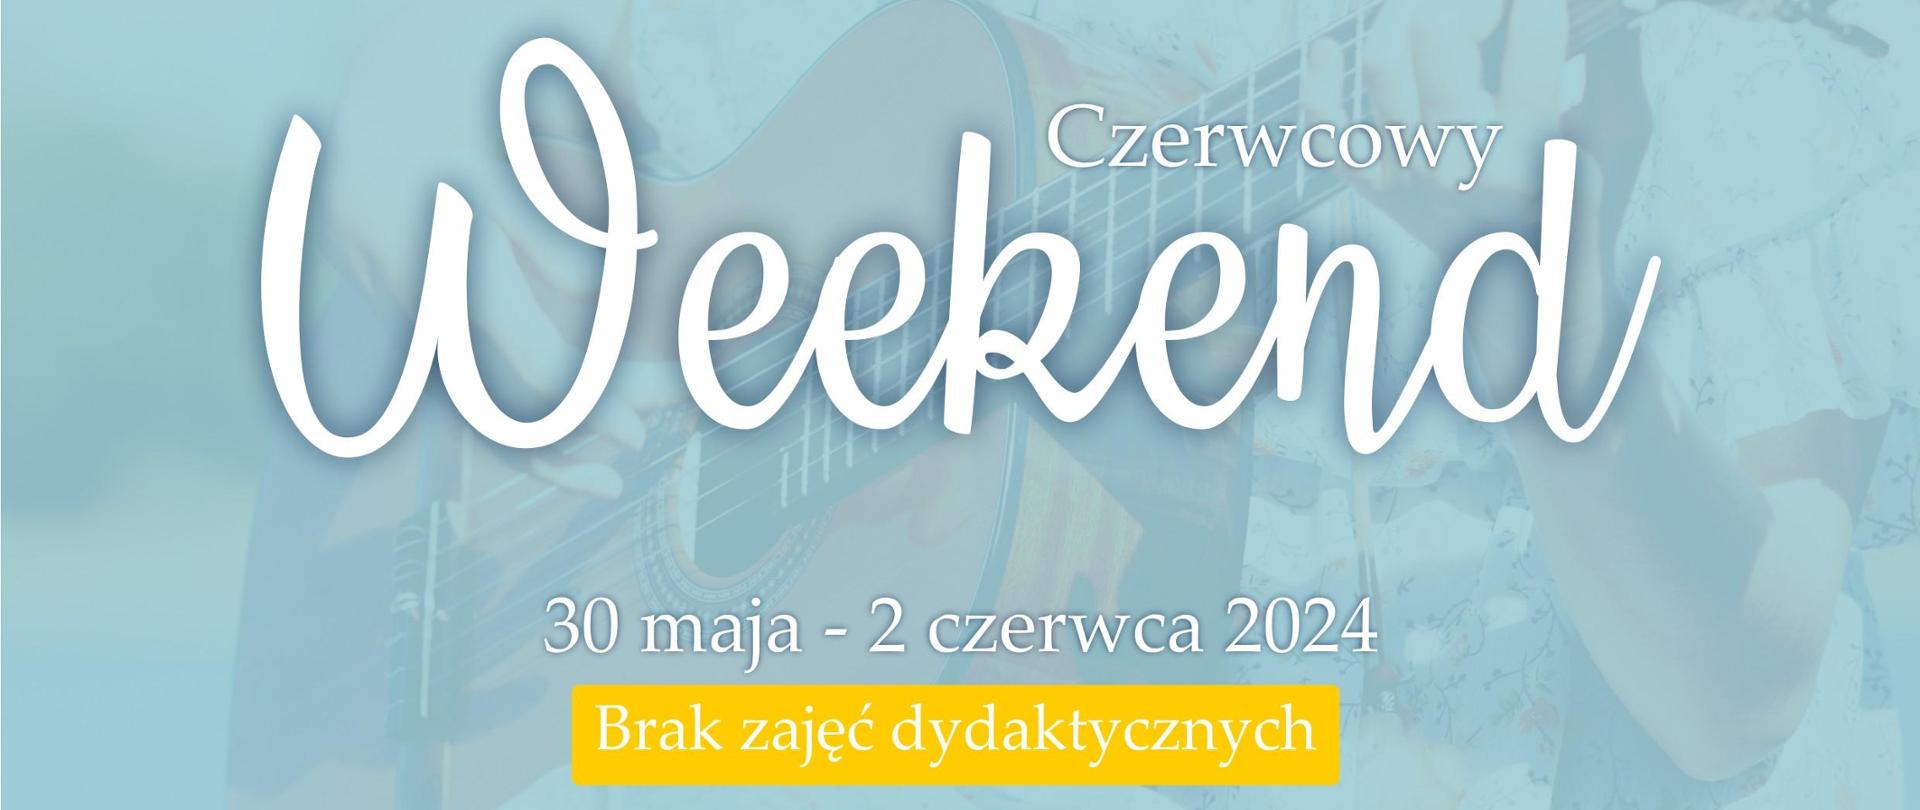 Obrazek - w tle postać z gitarą, po lewej na górze logo Szkoły, niżej napis: Weekend czerwcowy. 30 maja - 2 czerwca 2024 Brak zajęć dydaktycznych.